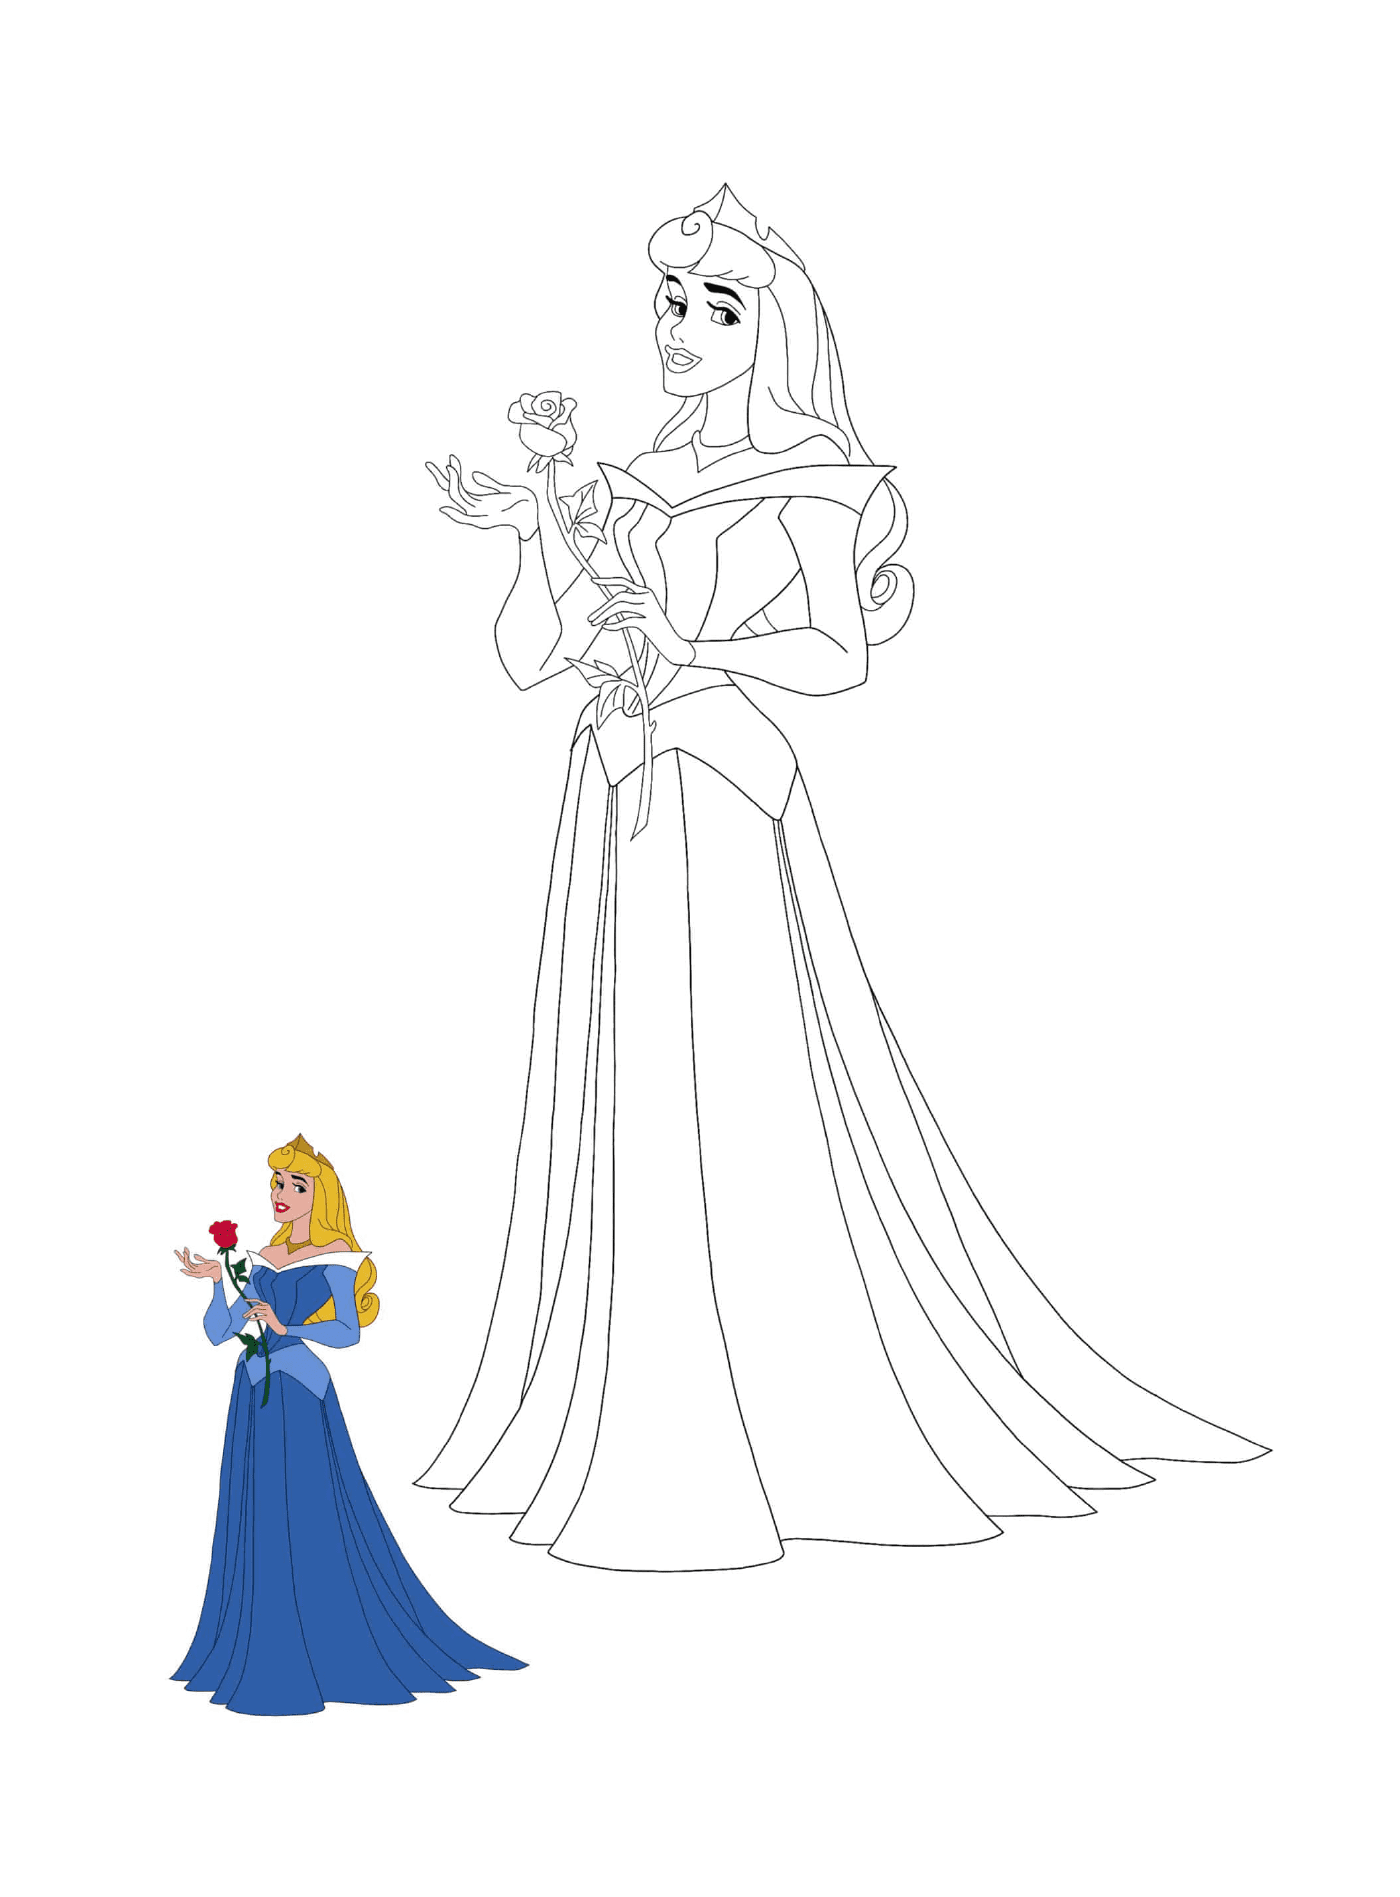  Prinzessin von La Belle au bois schlafend (Disney) mit Rose 